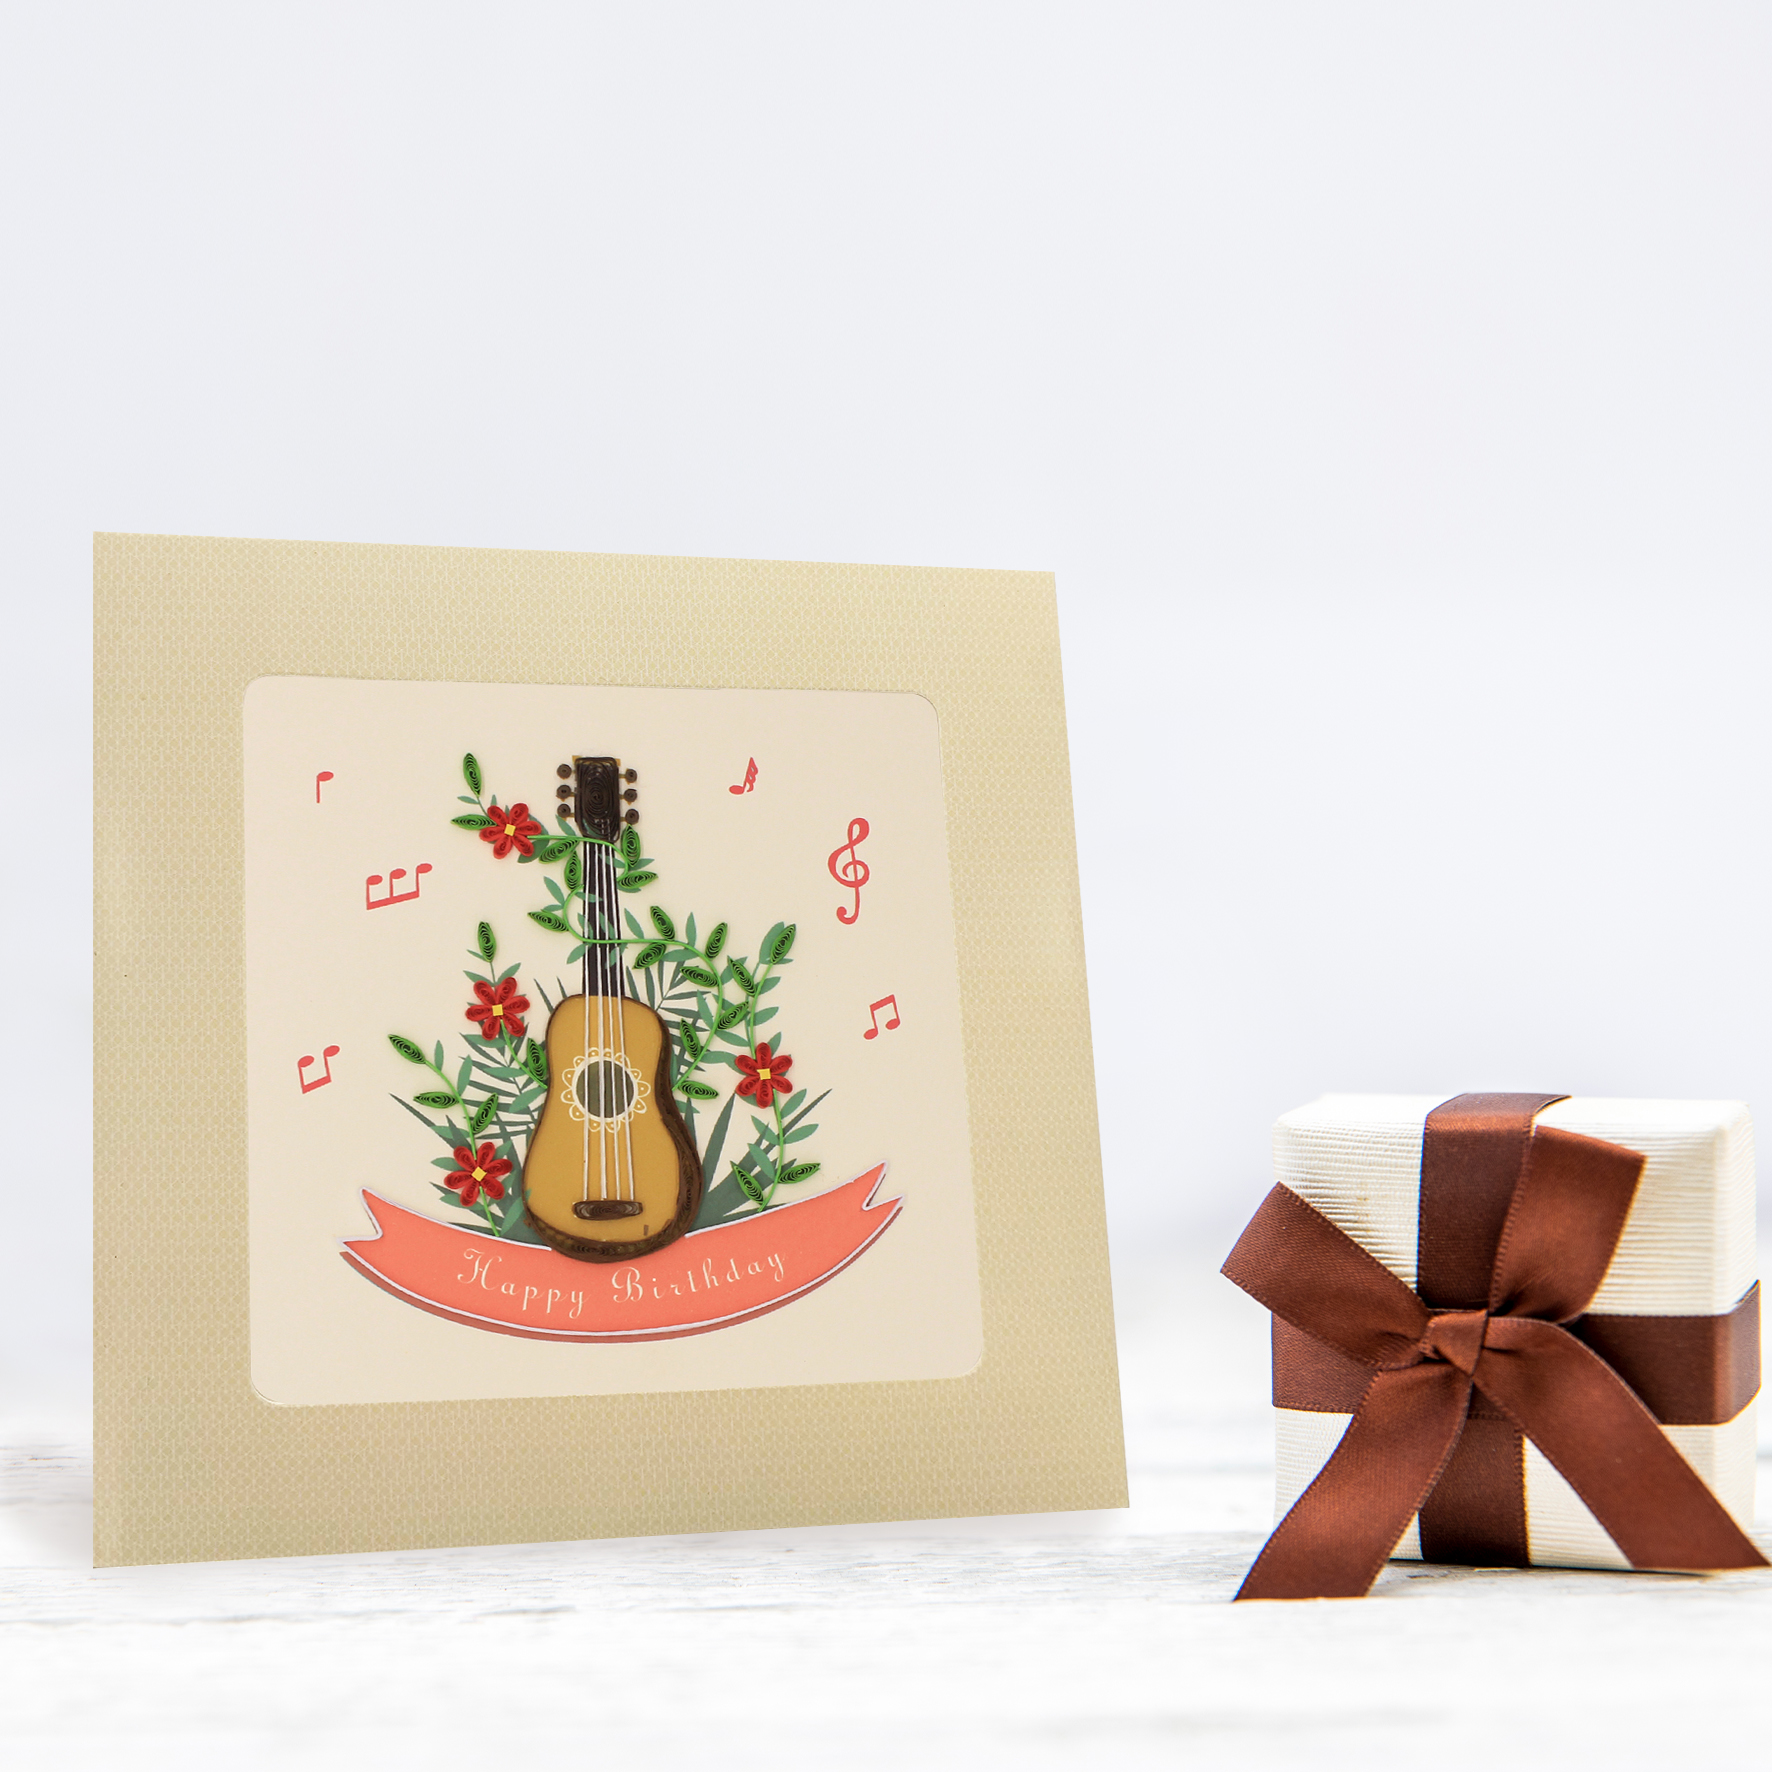 Thiệp Handmade - Thiệp Cây đàn guitar nghệ thuật giấy xoắn (Quilling Card) - Tặng Kèm Khung Giấy Để Bàn - Thiệp chúc mừng sinh nhật, kỷ niệm, tình yêu, cảm ơn...